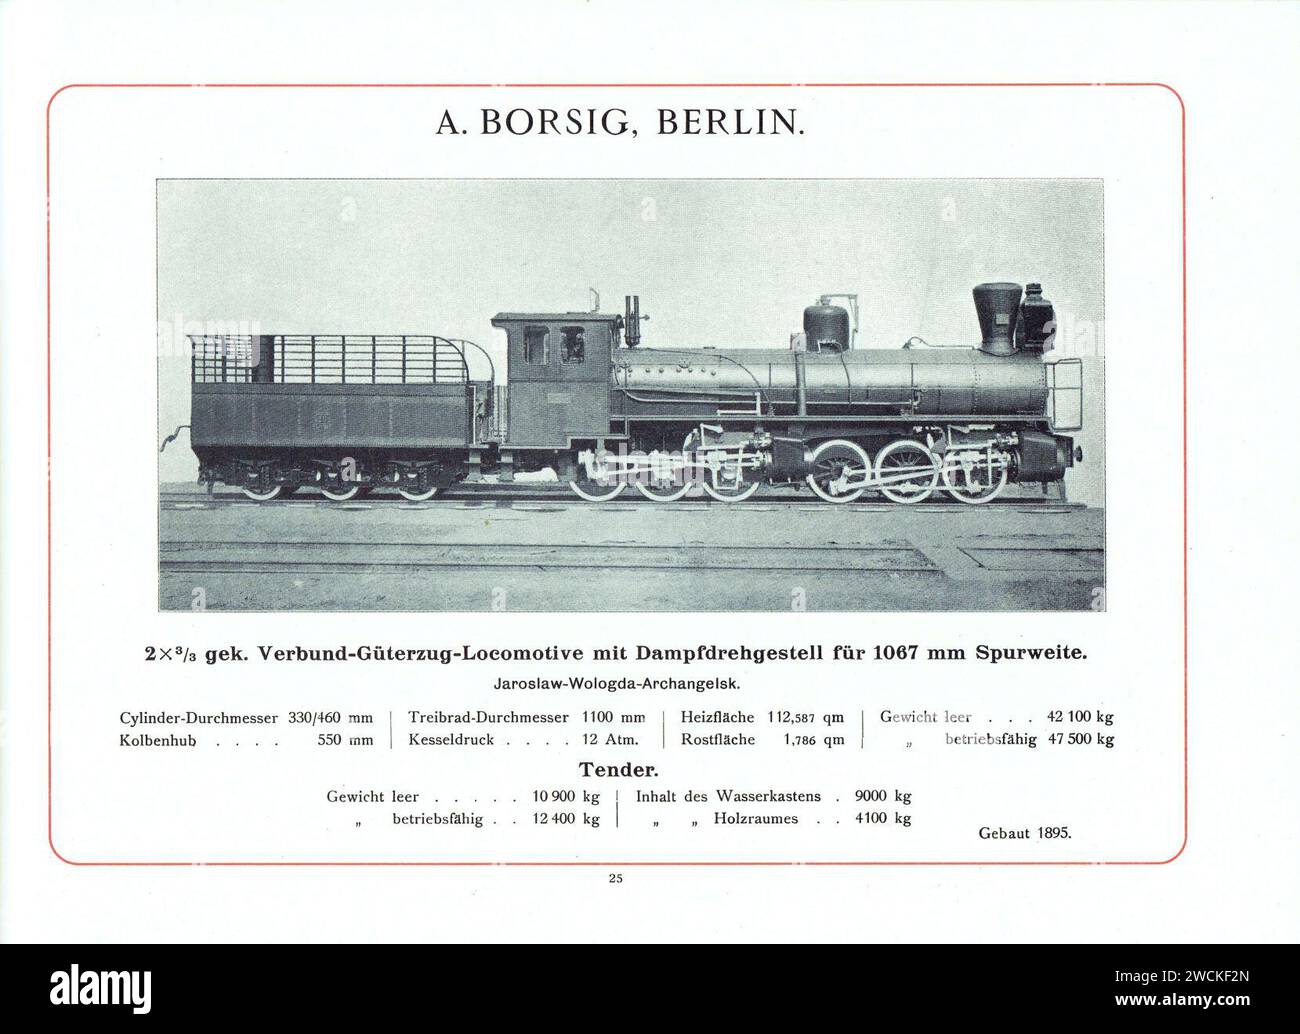 A. Borsig, Berlino - 2x3-3 gek. Tender-Locomotive für 1067 mm Spurweite für Jaroslaw-Wologda-Archangelsk - Katalog 1898. Foto Stock